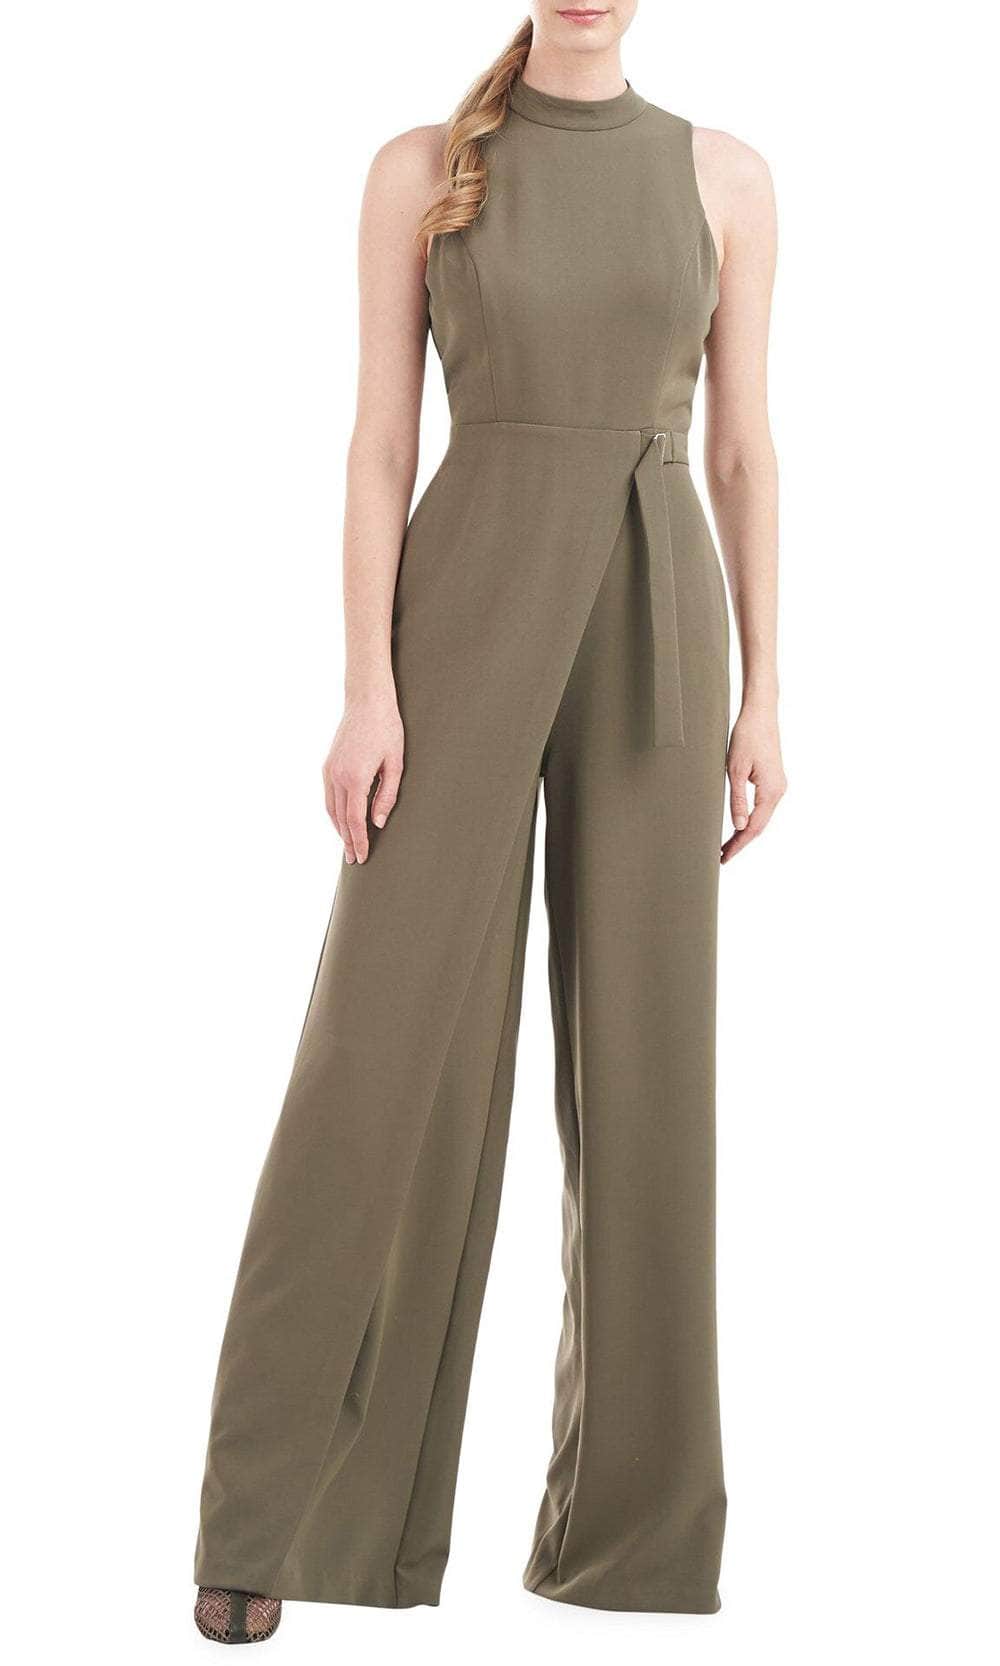 Kay Unger 5648558 - Turtleneck Belted Overlay Jumpsuit Formal Pantsuits